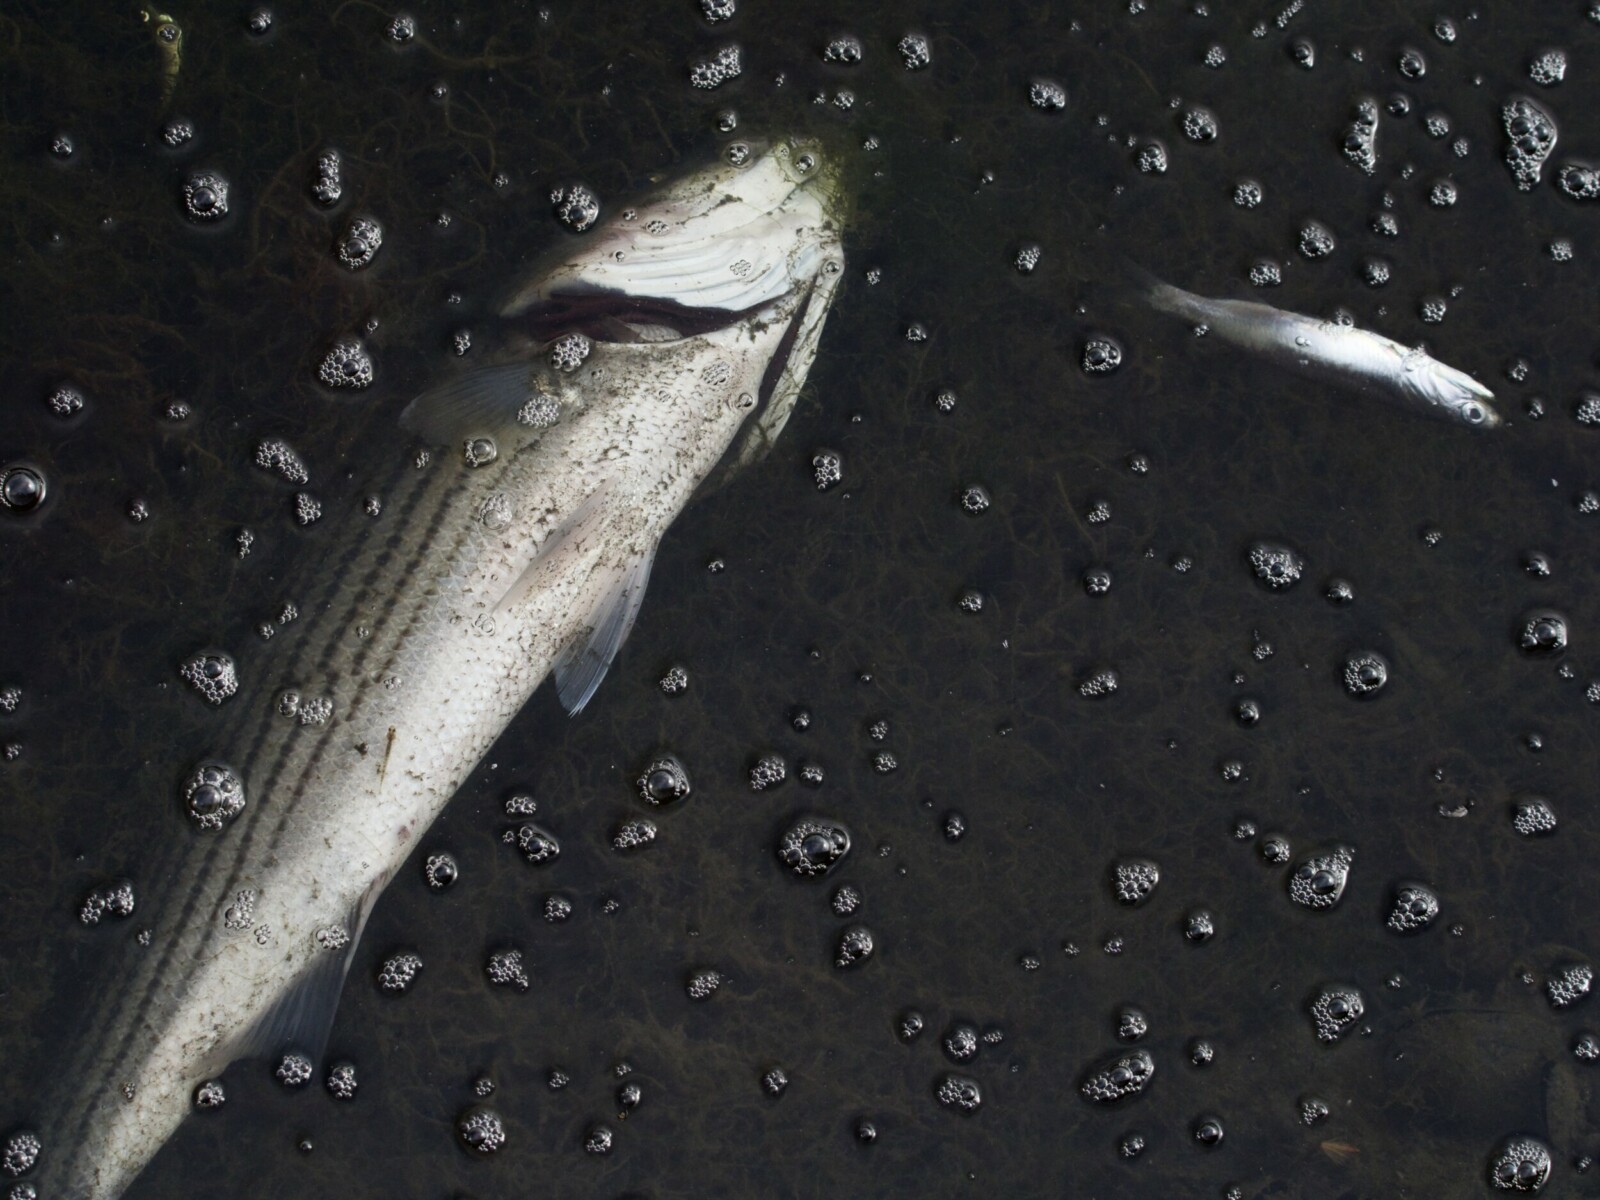 Fish Die-Off and Algae Bloom in Lake Merritt